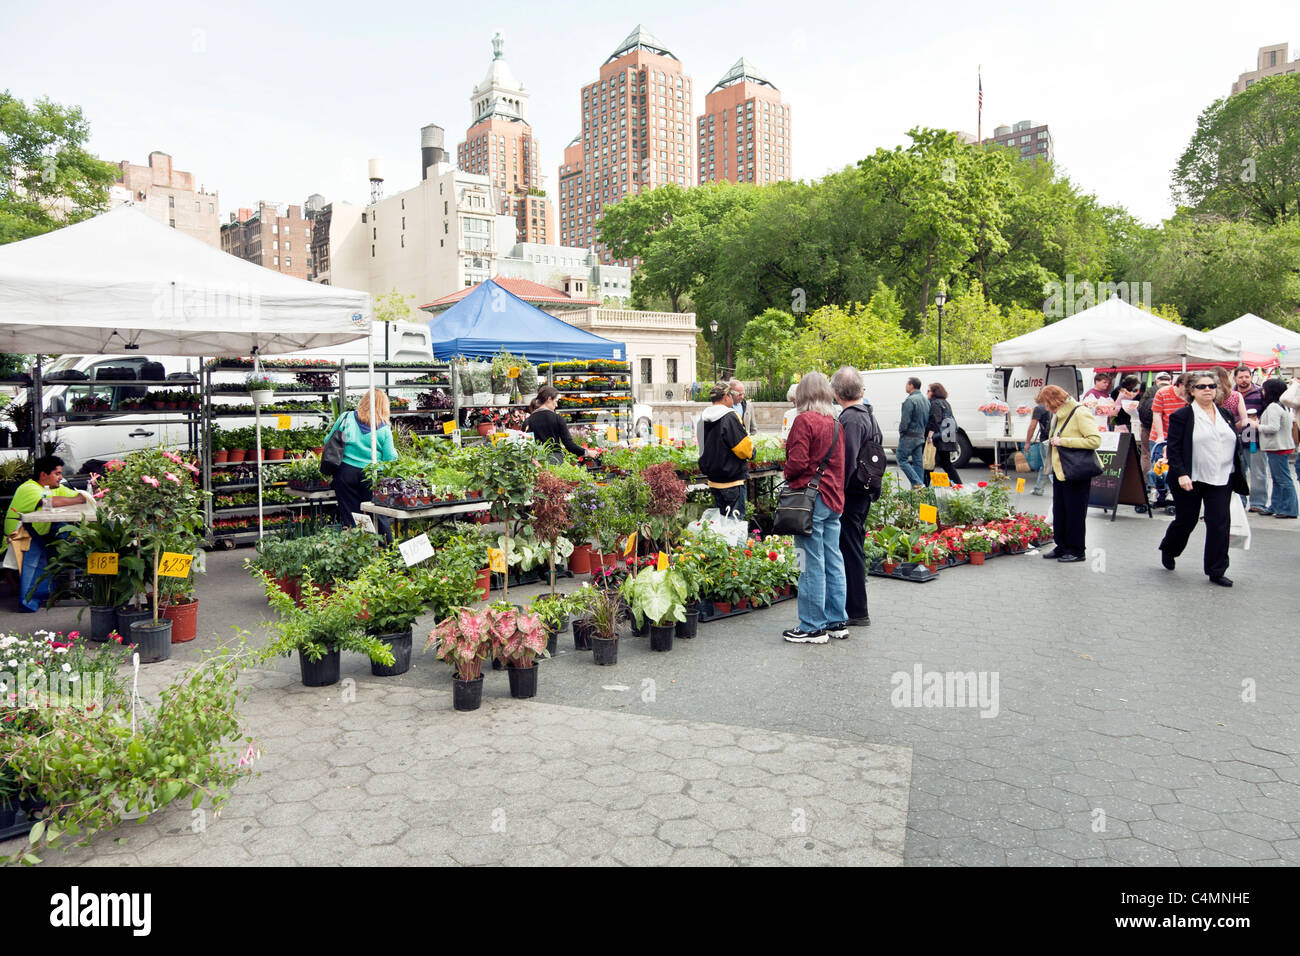 Fülle von blühenden Pflanzen Sträucher im städtischen Garten Stall am Union Square grünen Bauernmarkt New York City Stockfoto